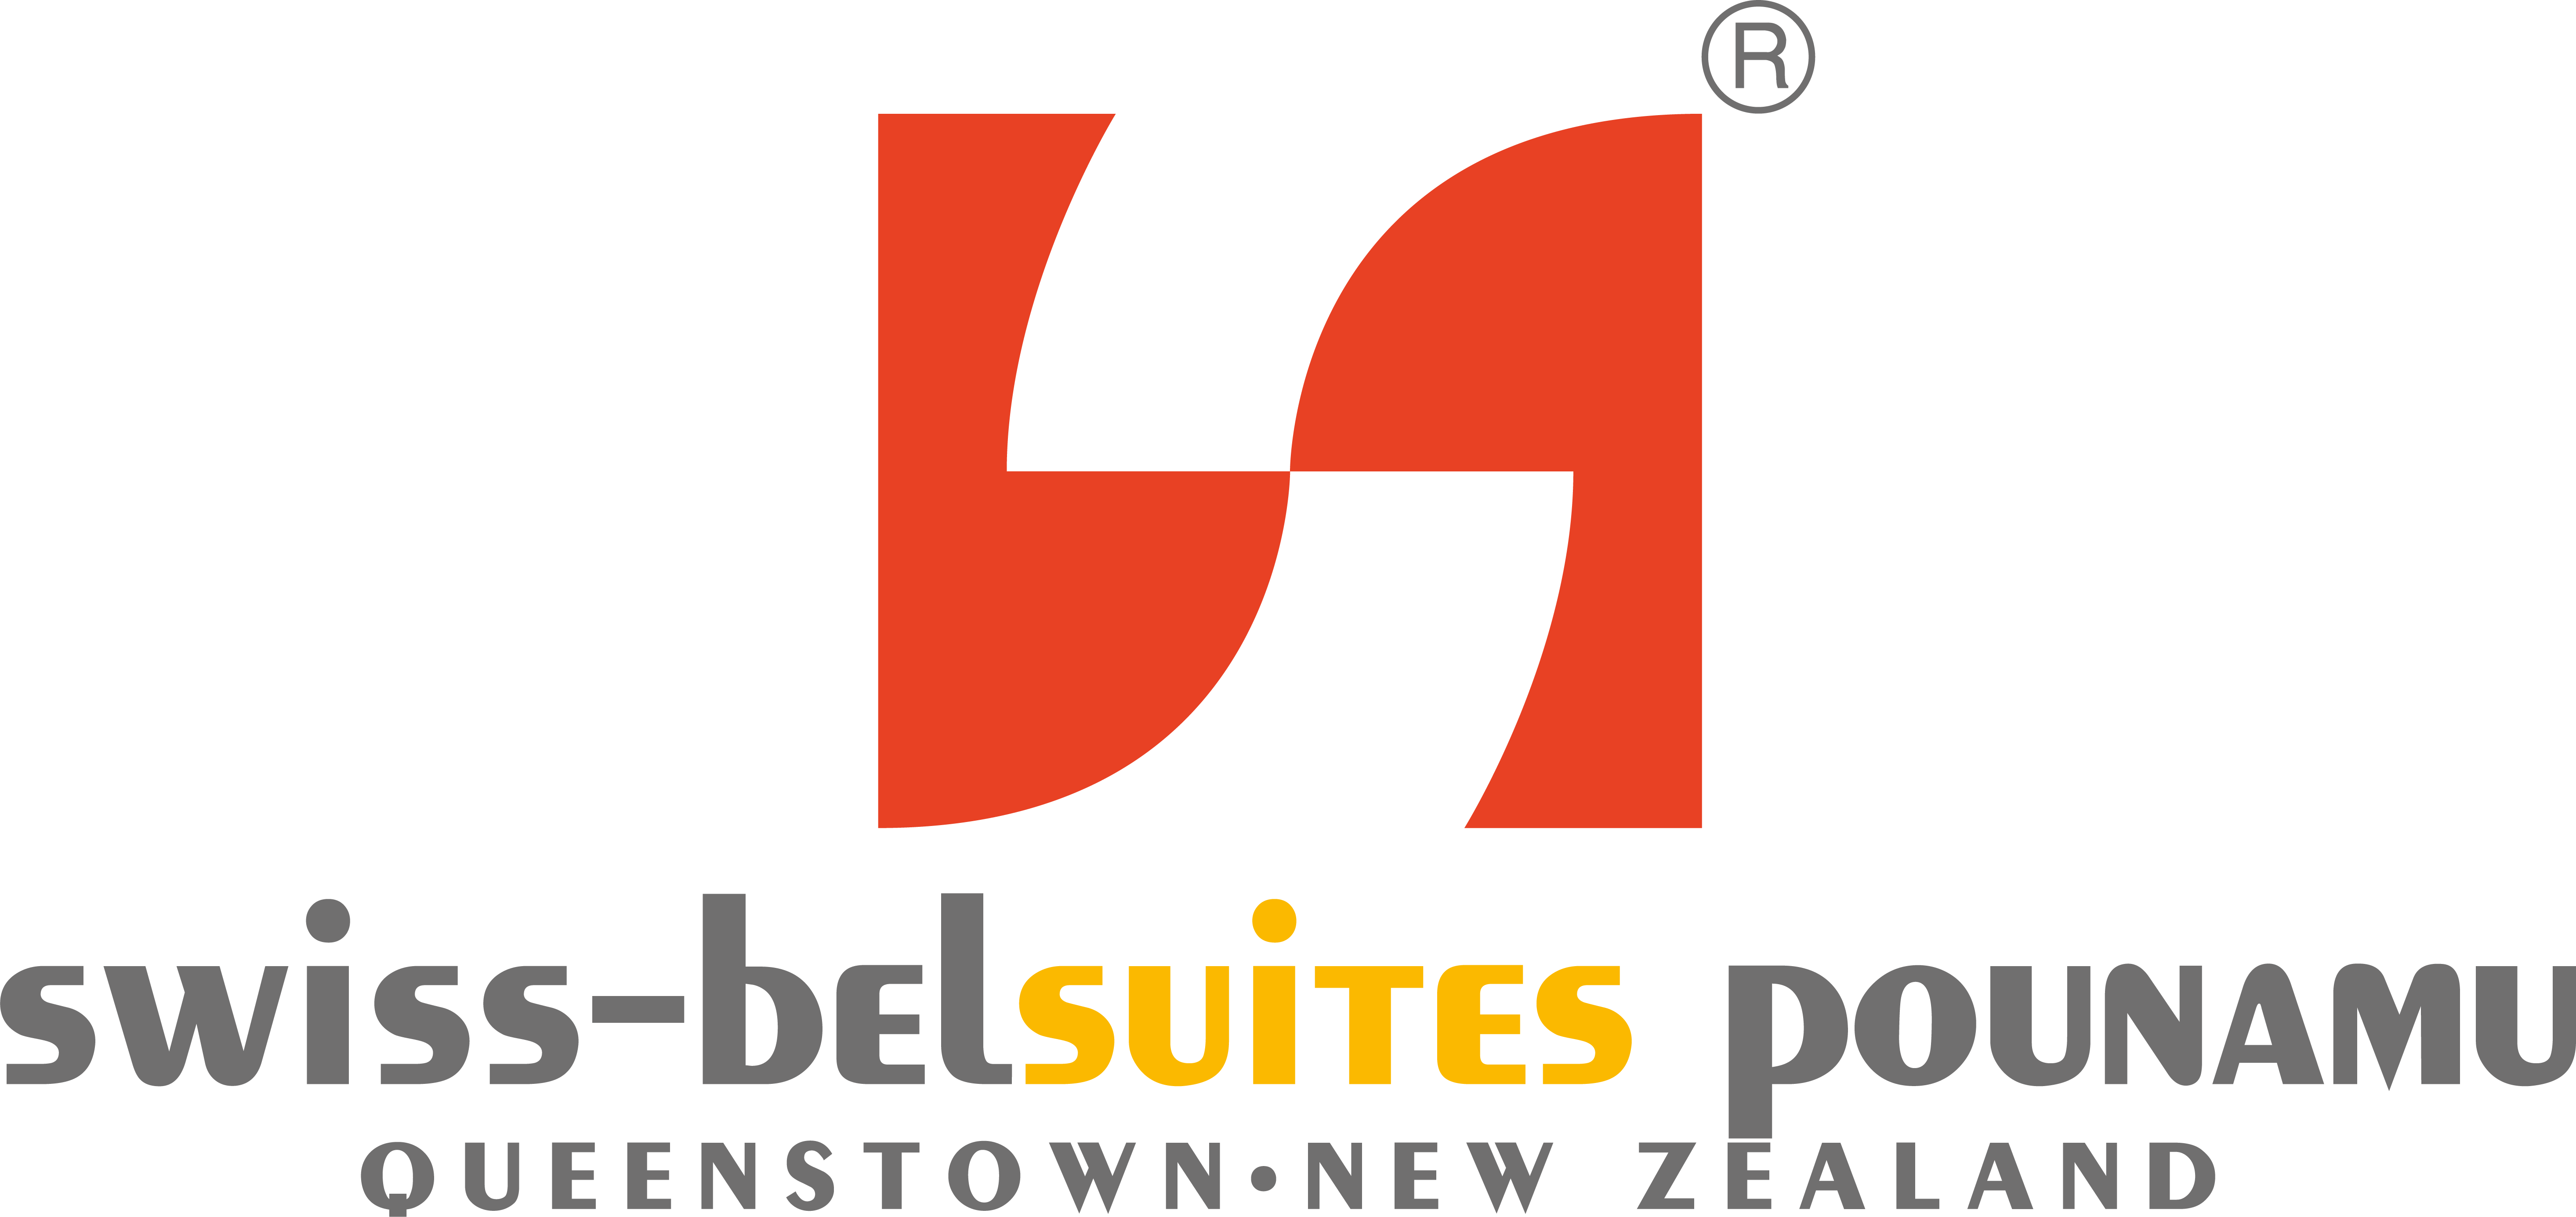 Swiss-Belsuites Pounamu, Queenstown, New Zealand